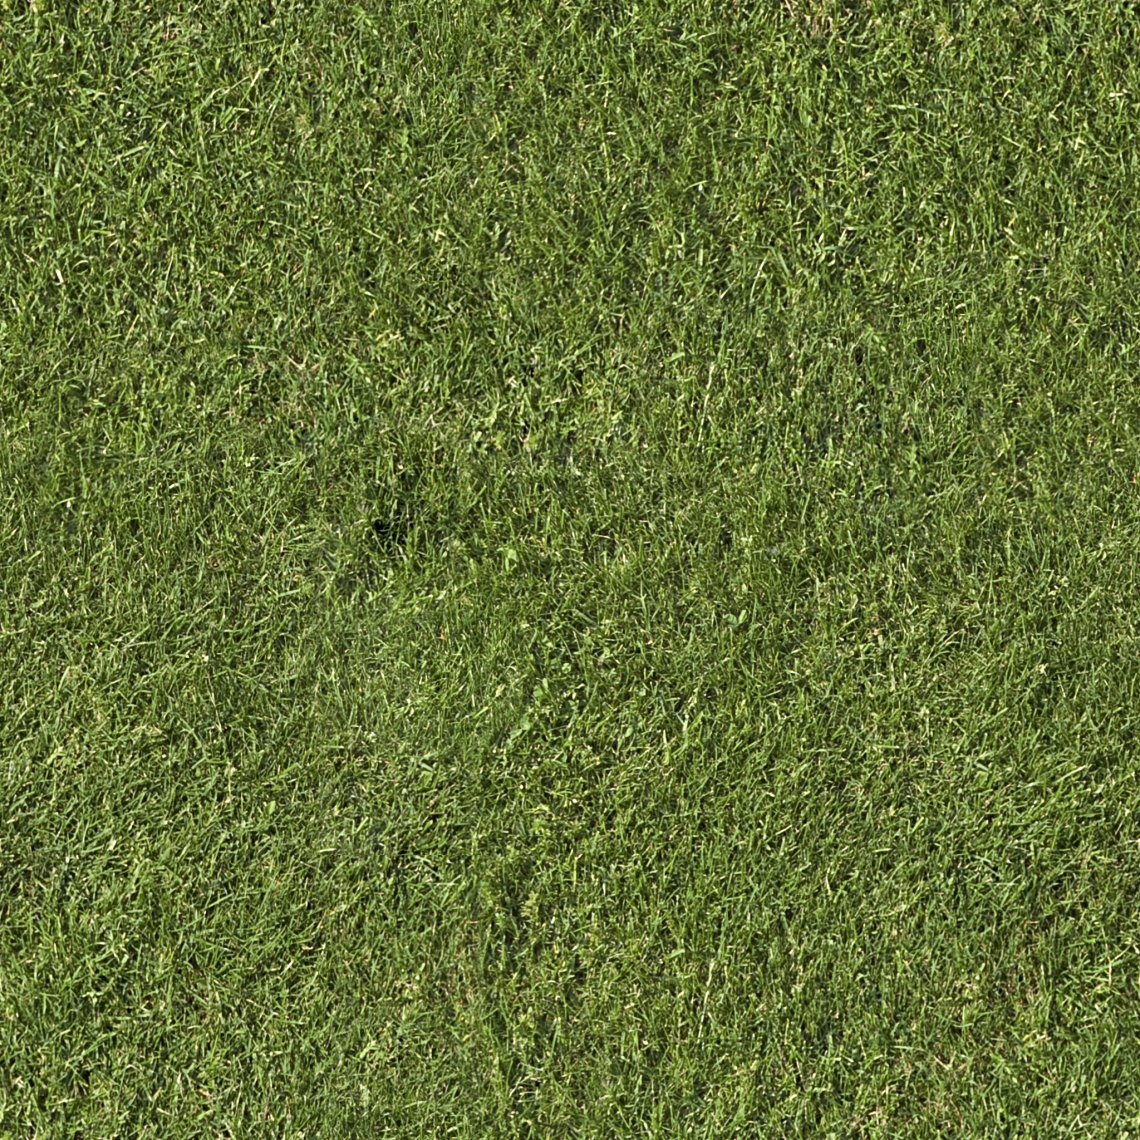 grass texture overlay